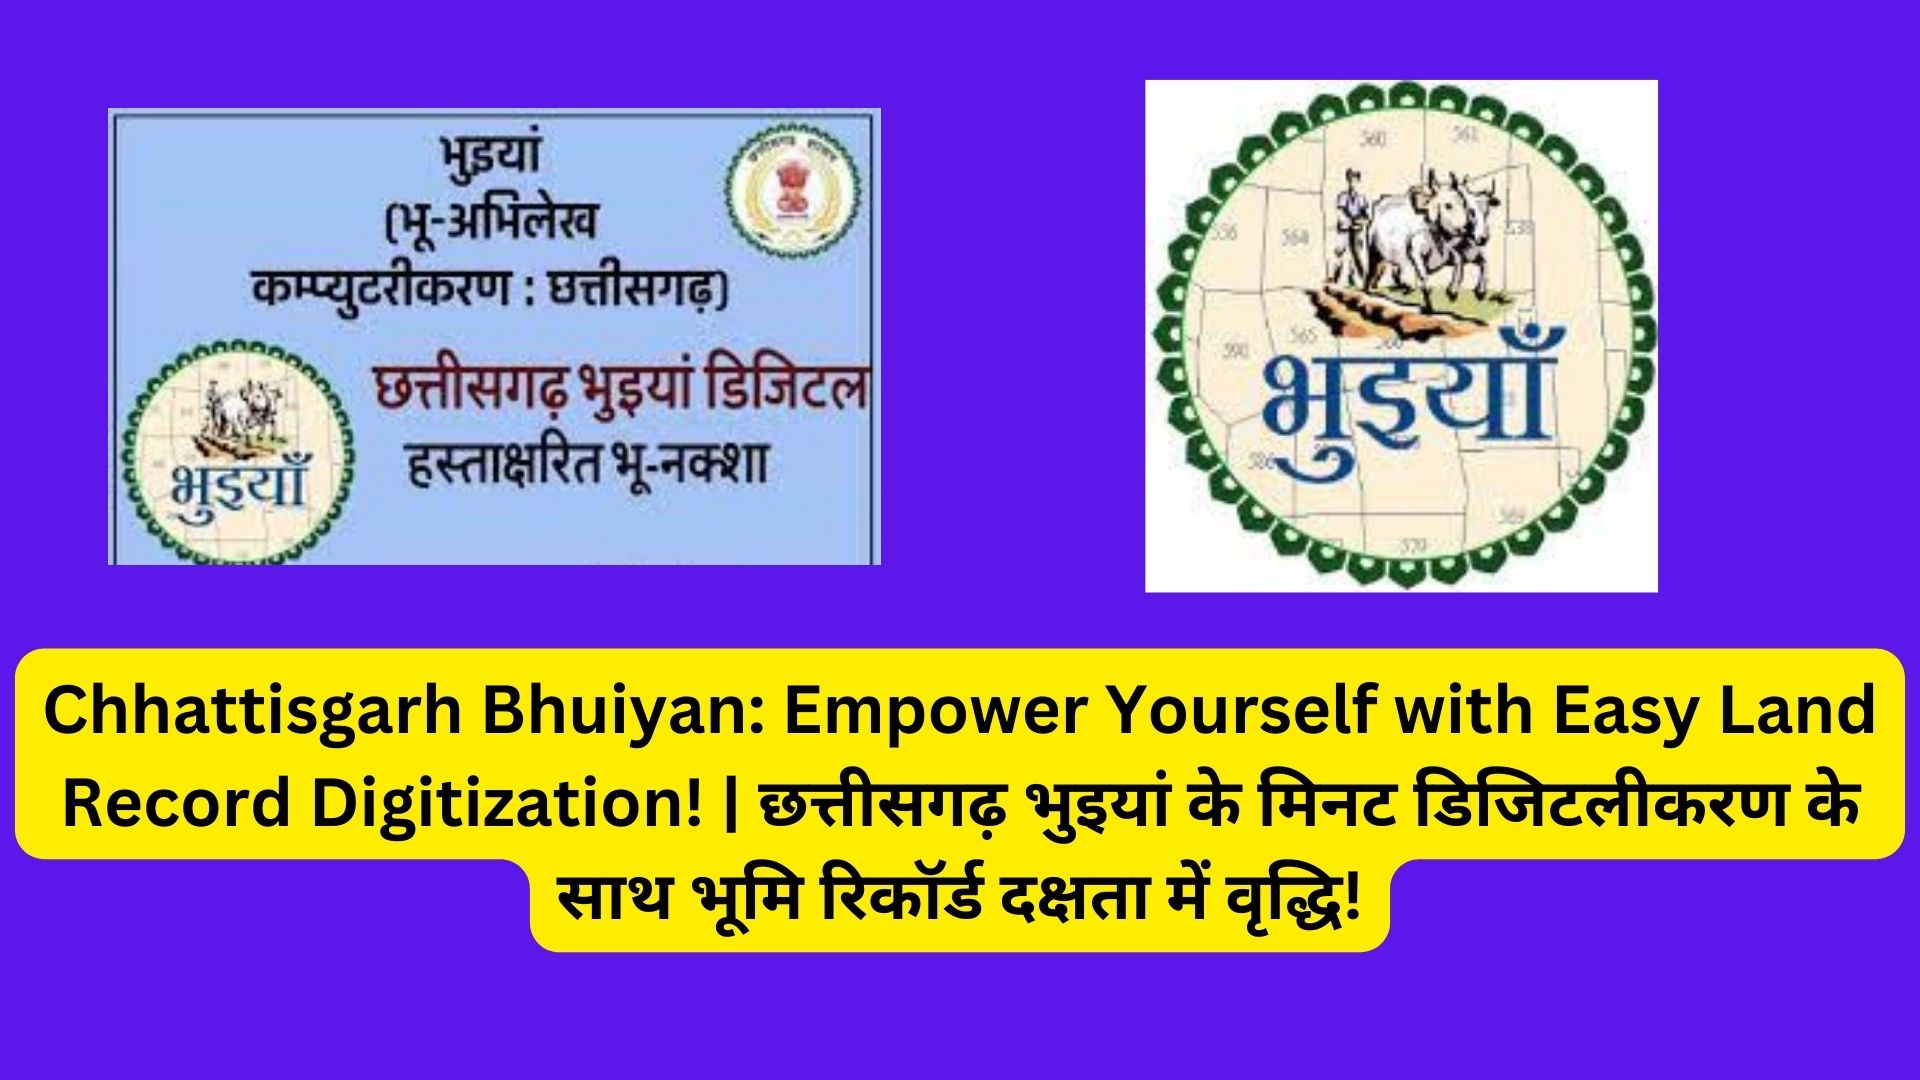 Chhattisgarh Bhuiyan: Empower Yourself with Easy Land Record Digitization! | छत्तीसगढ़ भुइयां के मिनट डिजिटलीकरण के साथ भूमि रिकॉर्ड दक्षता में वृद्धि!